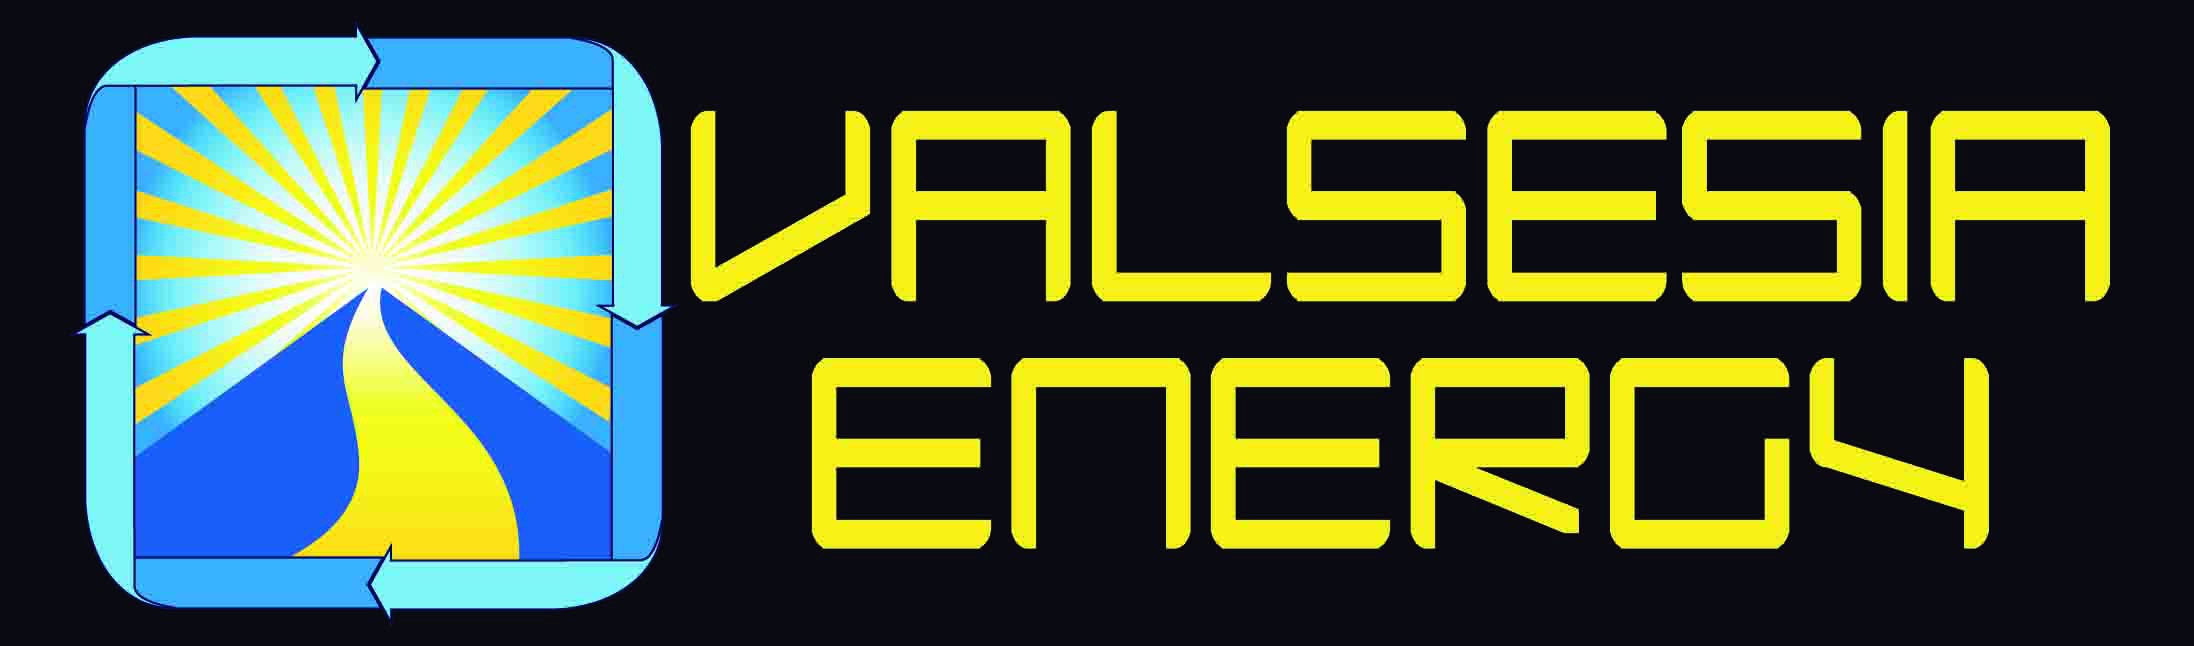 VALSESIA ENERGY